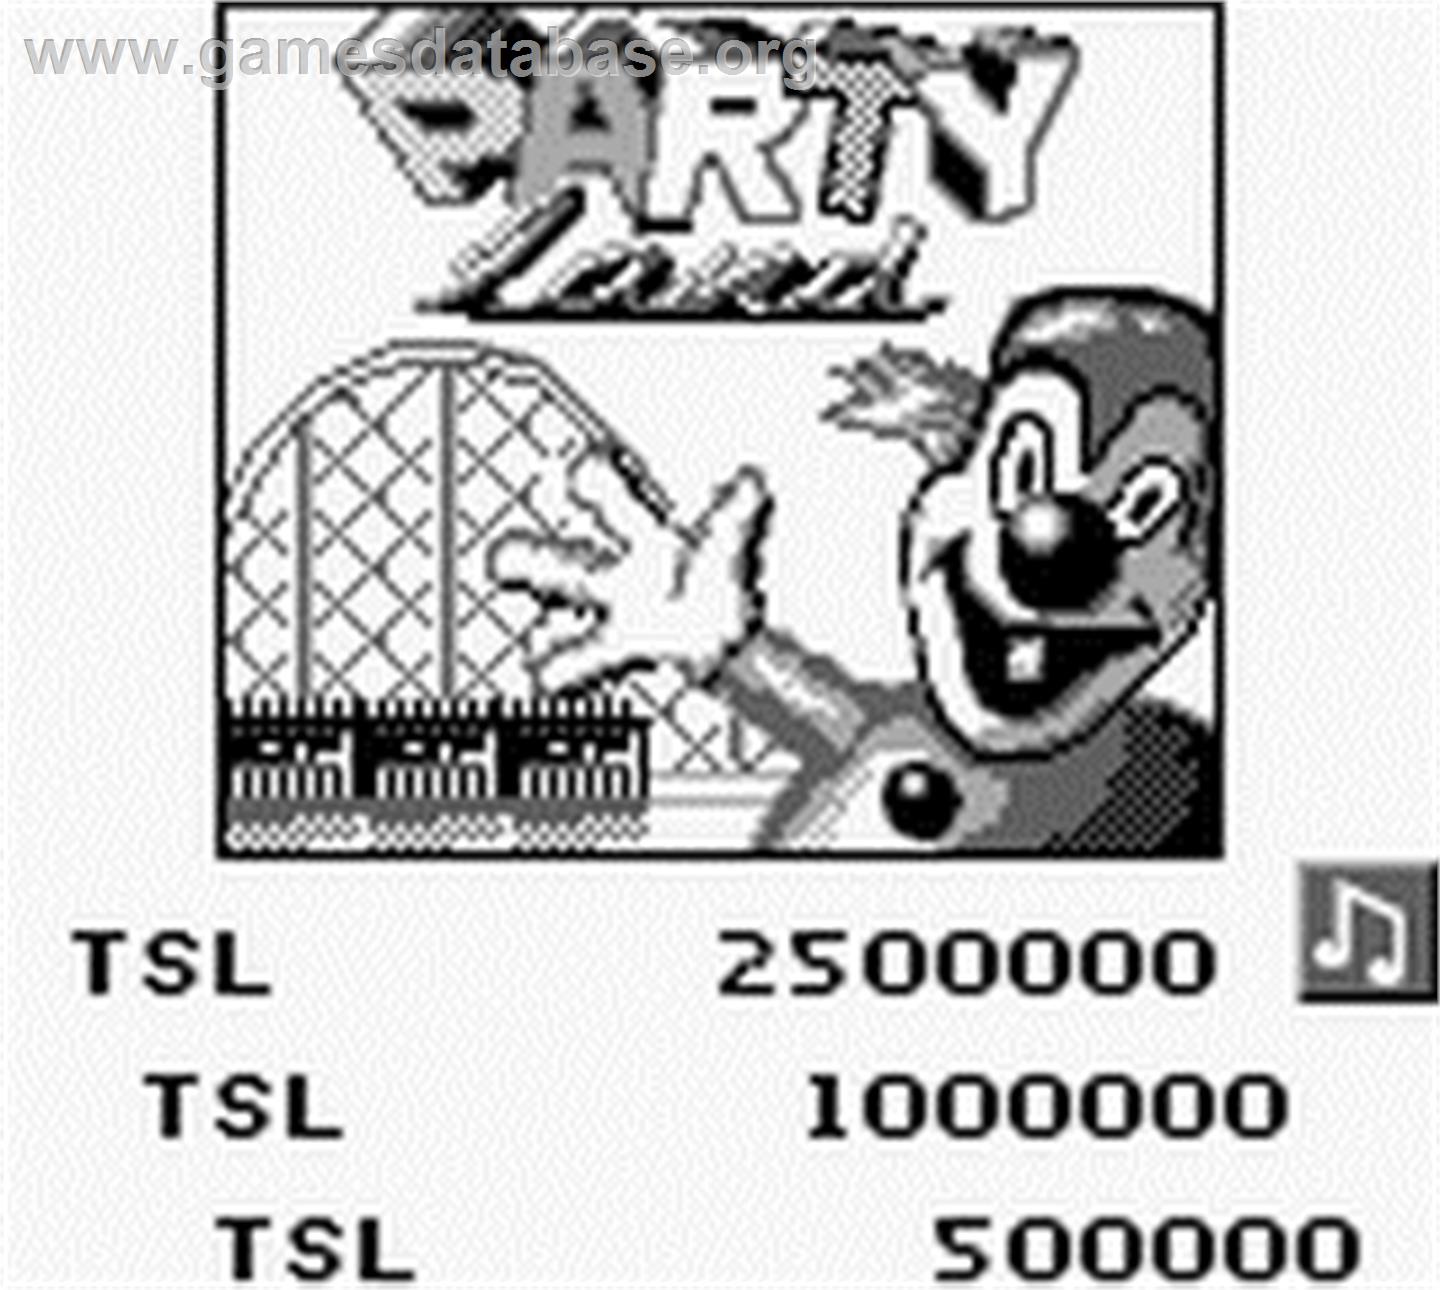 Pinball Fantasies - Nintendo Game Boy - Artwork - Title Screen